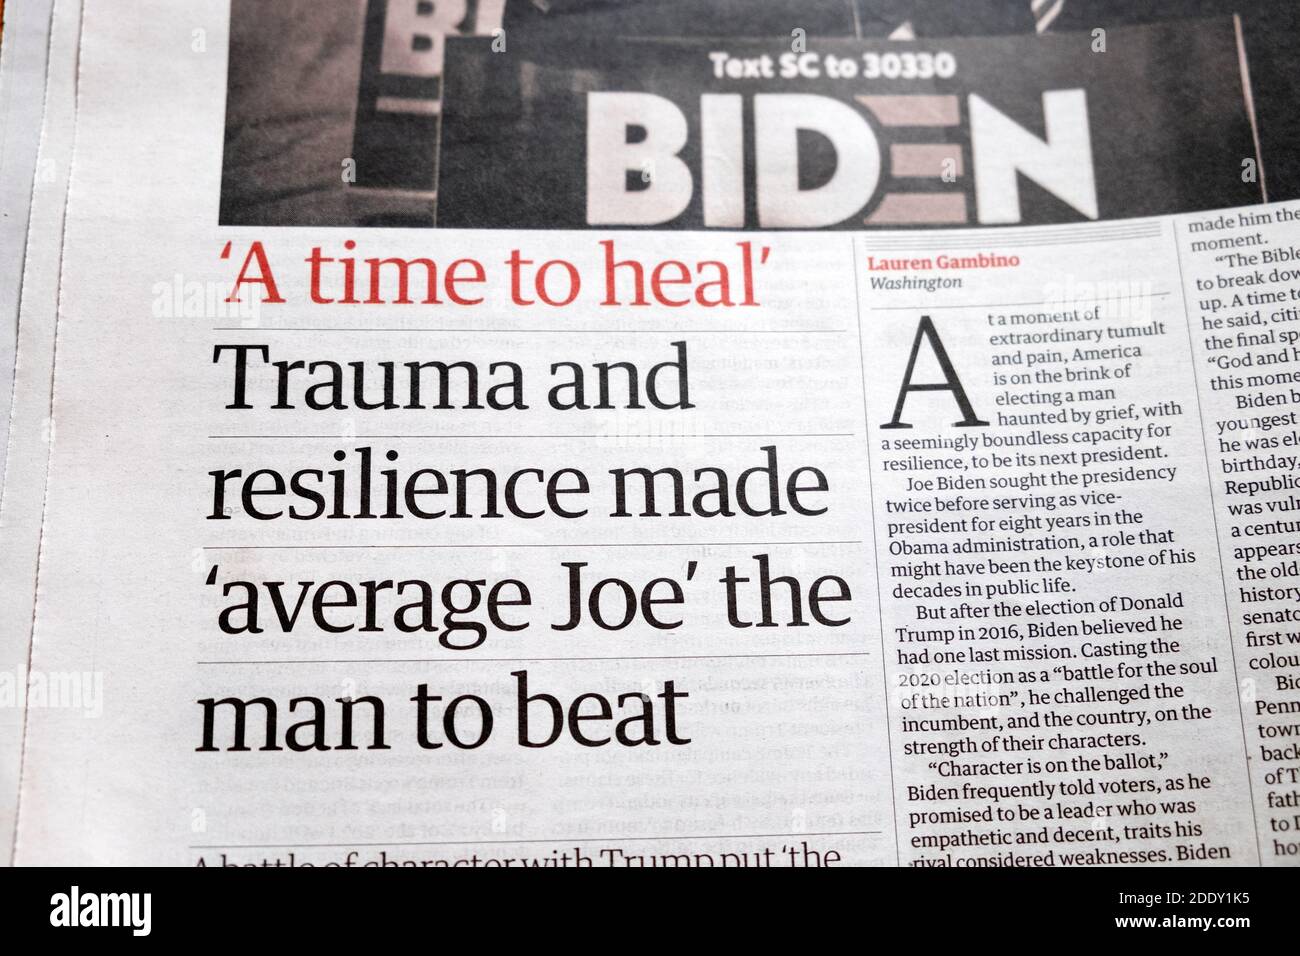 Biden 'UN tempo per guarire' 'Trauma e la resilienza ha fatto 'media Joe 'l'uomo da battere' 2020 titoli del giornale delle elezioni USA Su articolo in Guardian London UK Foto Stock